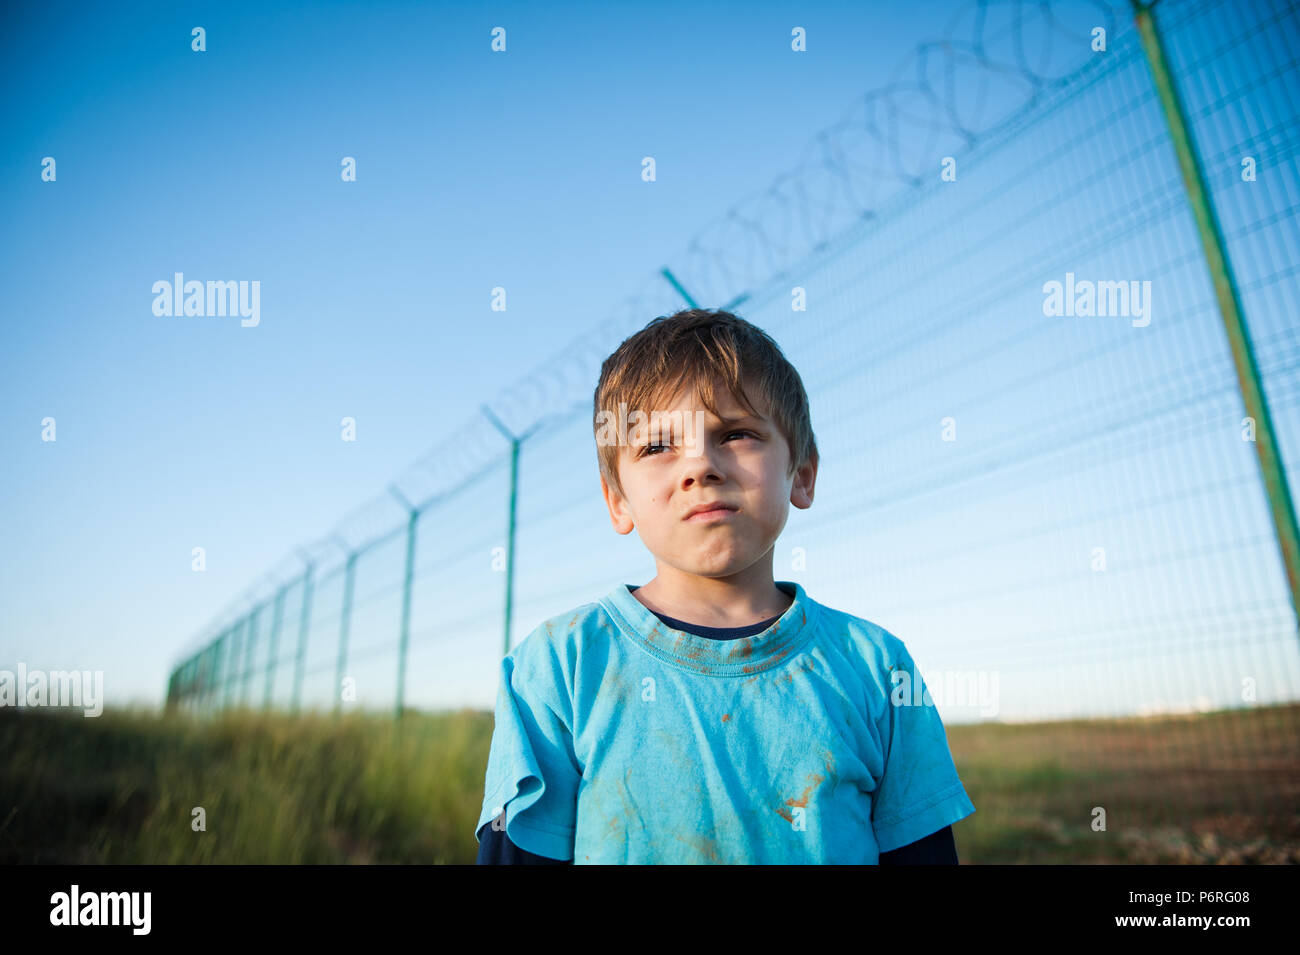 Cute pensive face sale enfant réfugié portrait on clôture avec barbelés à bakdrop au coucher du soleil Banque D'Images